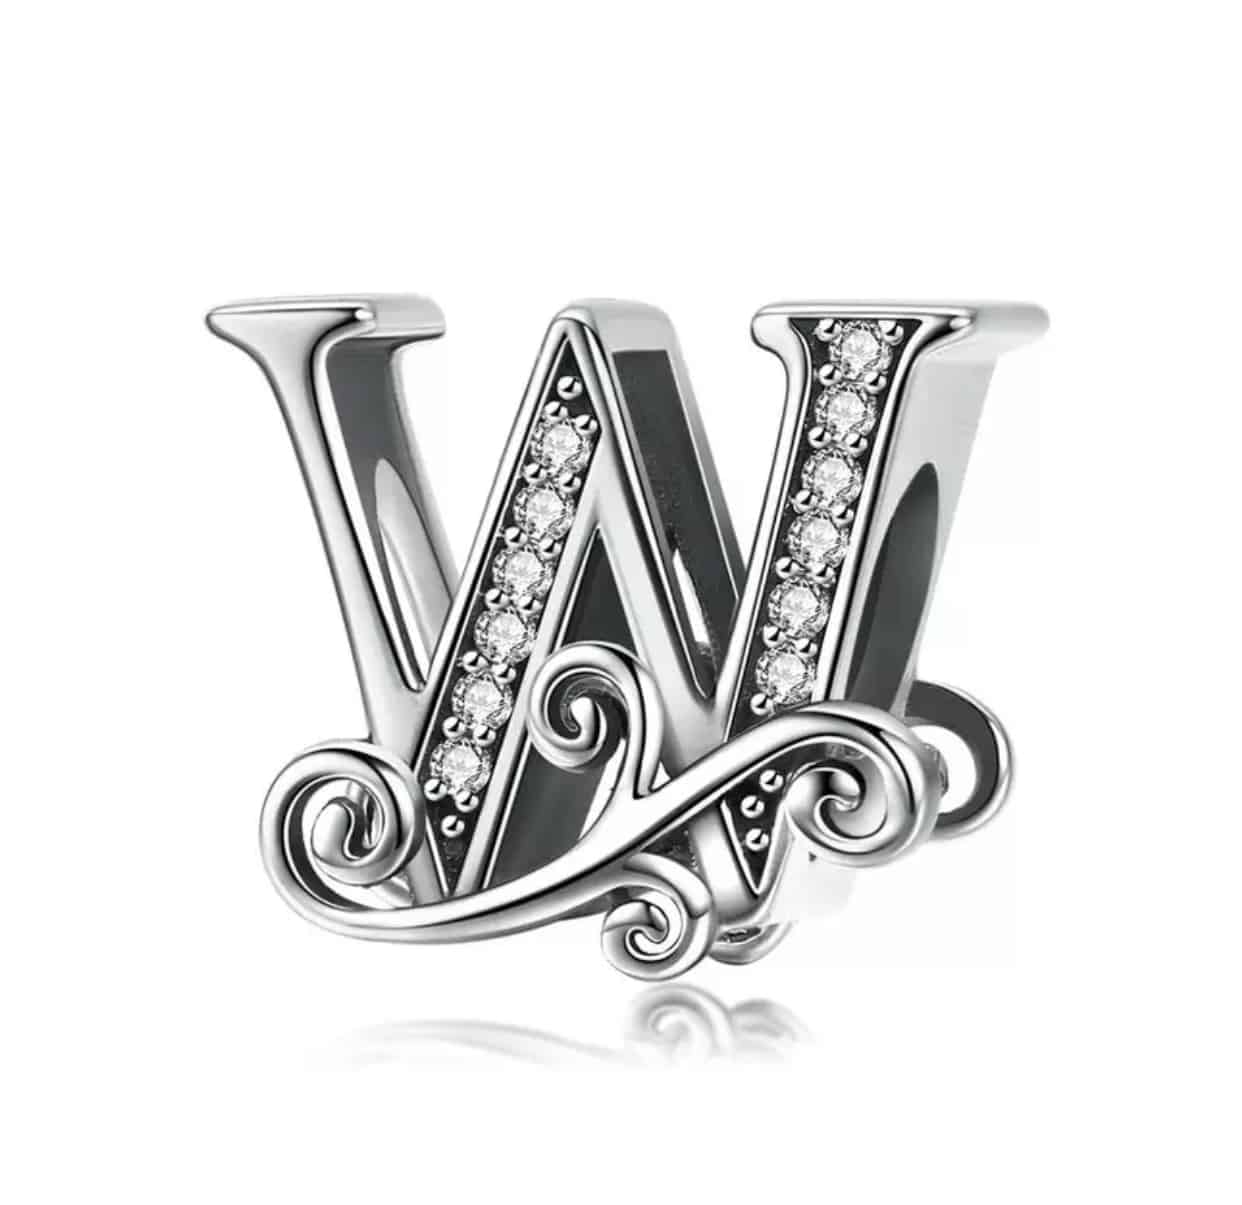 Product Afbeelding Vooraanzicht van onze super mooie bead letter W uit de collectie letters en cijfers. De sierletter W is gemaakt van 925 sterling zilver en is ingelegd met transparante zirkonia steentjes. Verder is de W afgewerkt met sierlijke golven langs de letter.